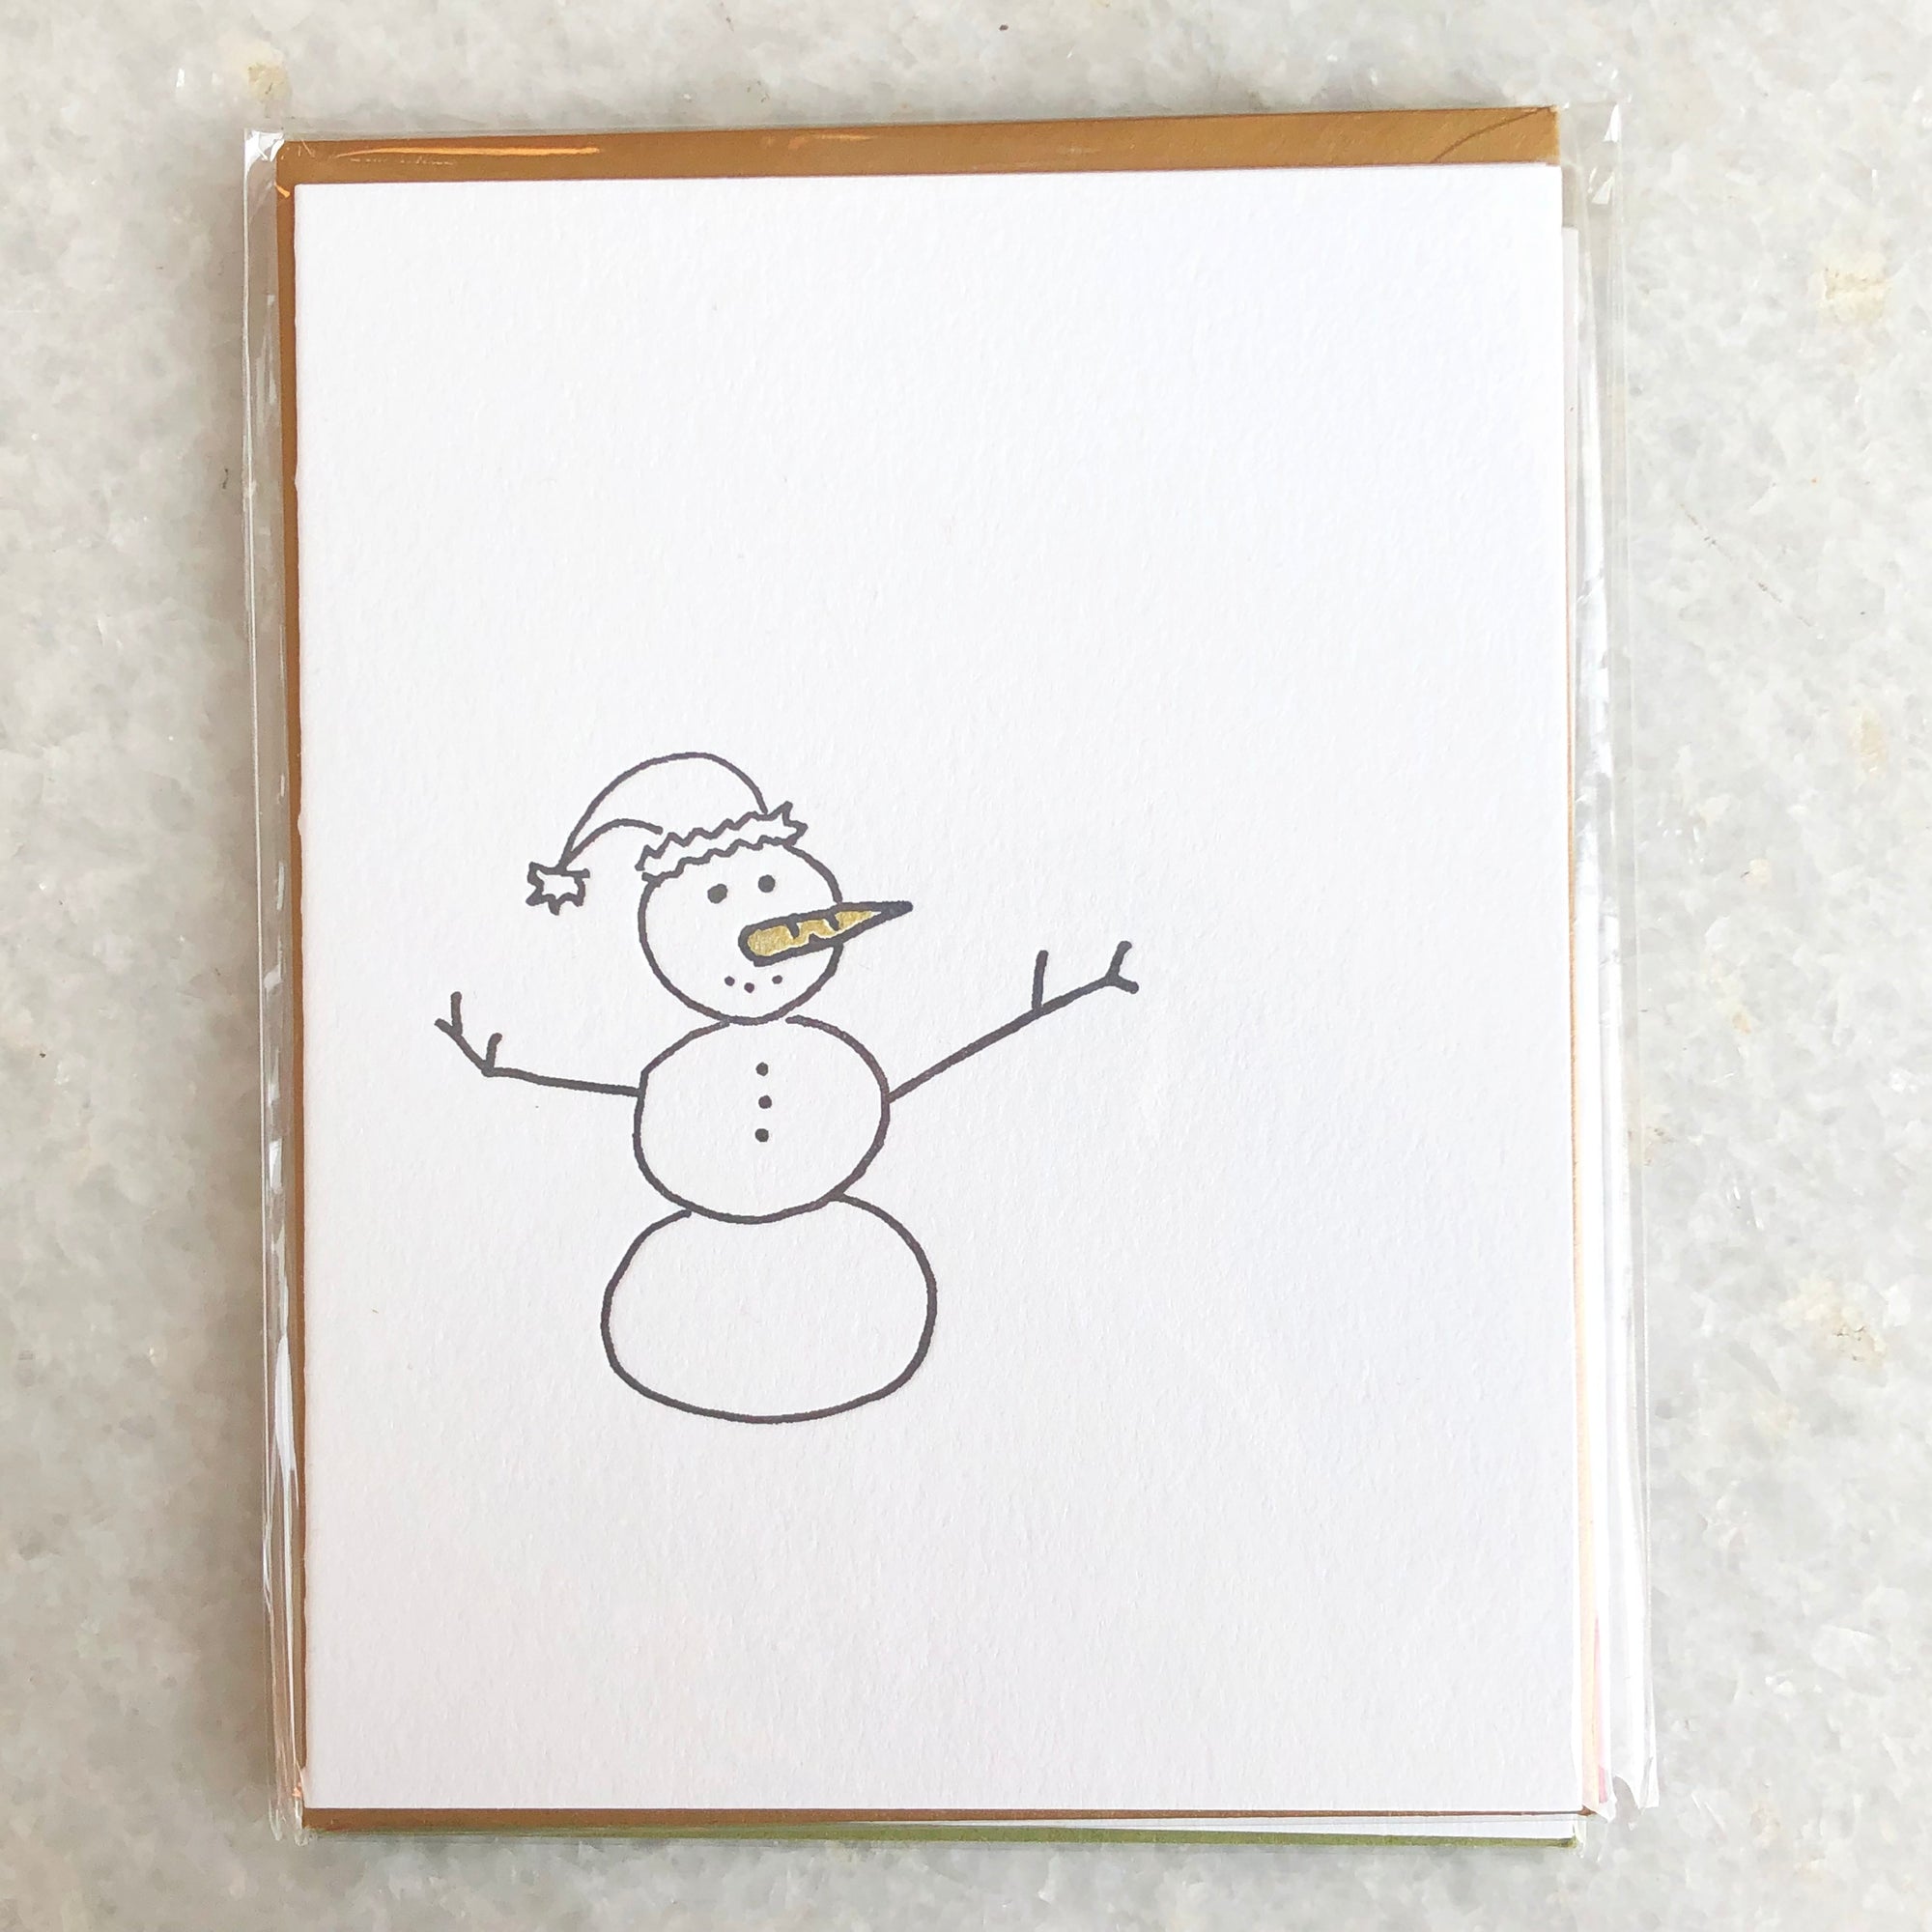 Snowman Card